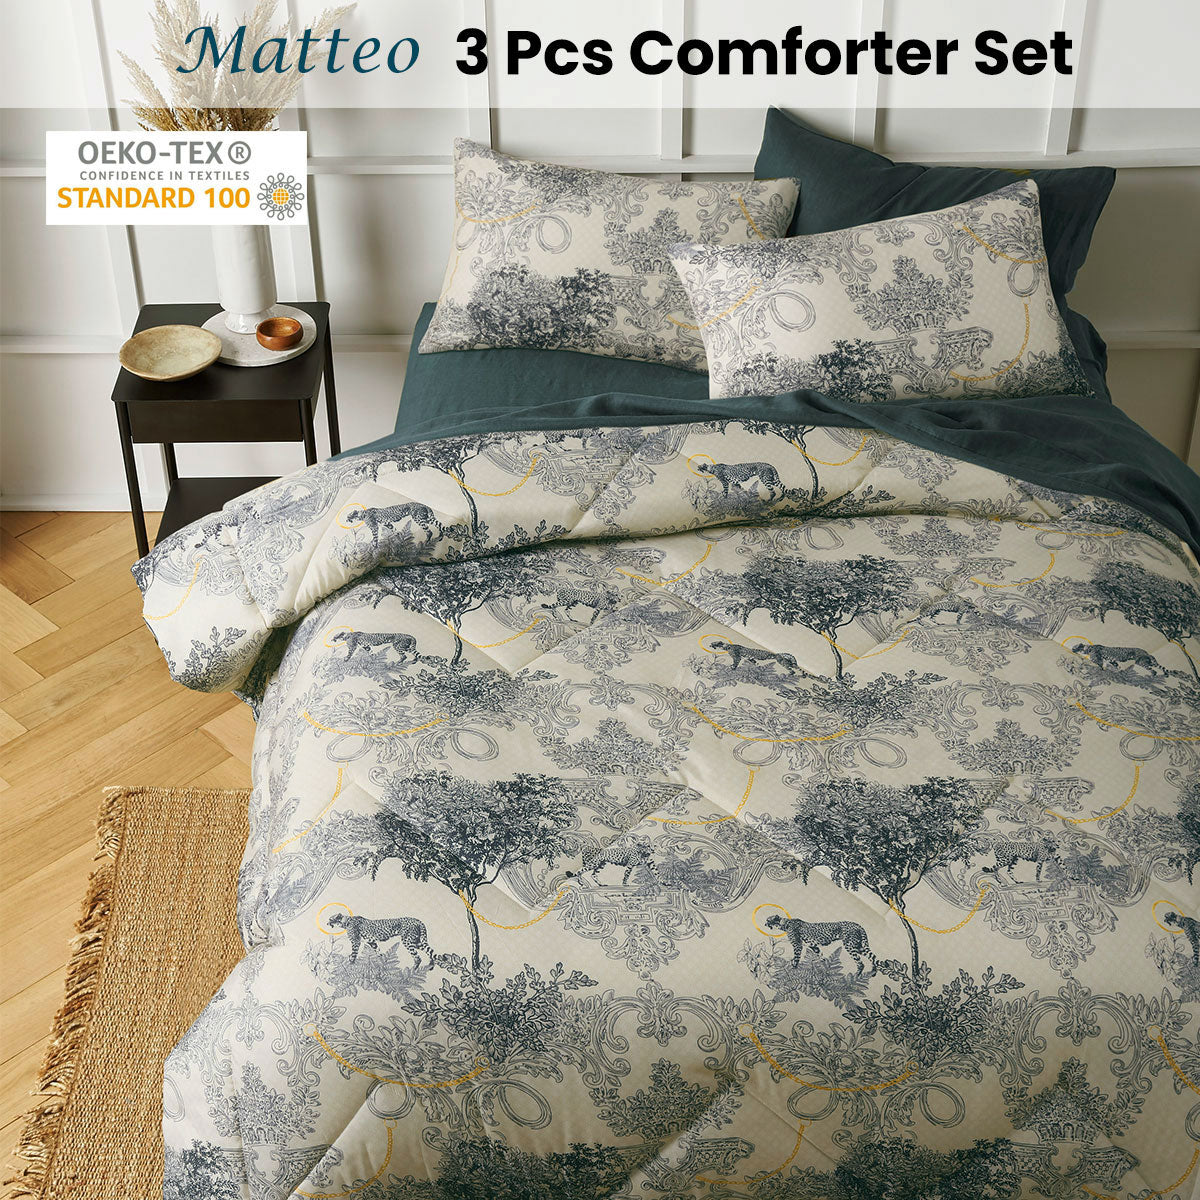 Big Sleep 3 Piece Matteo Comforter Set Queen